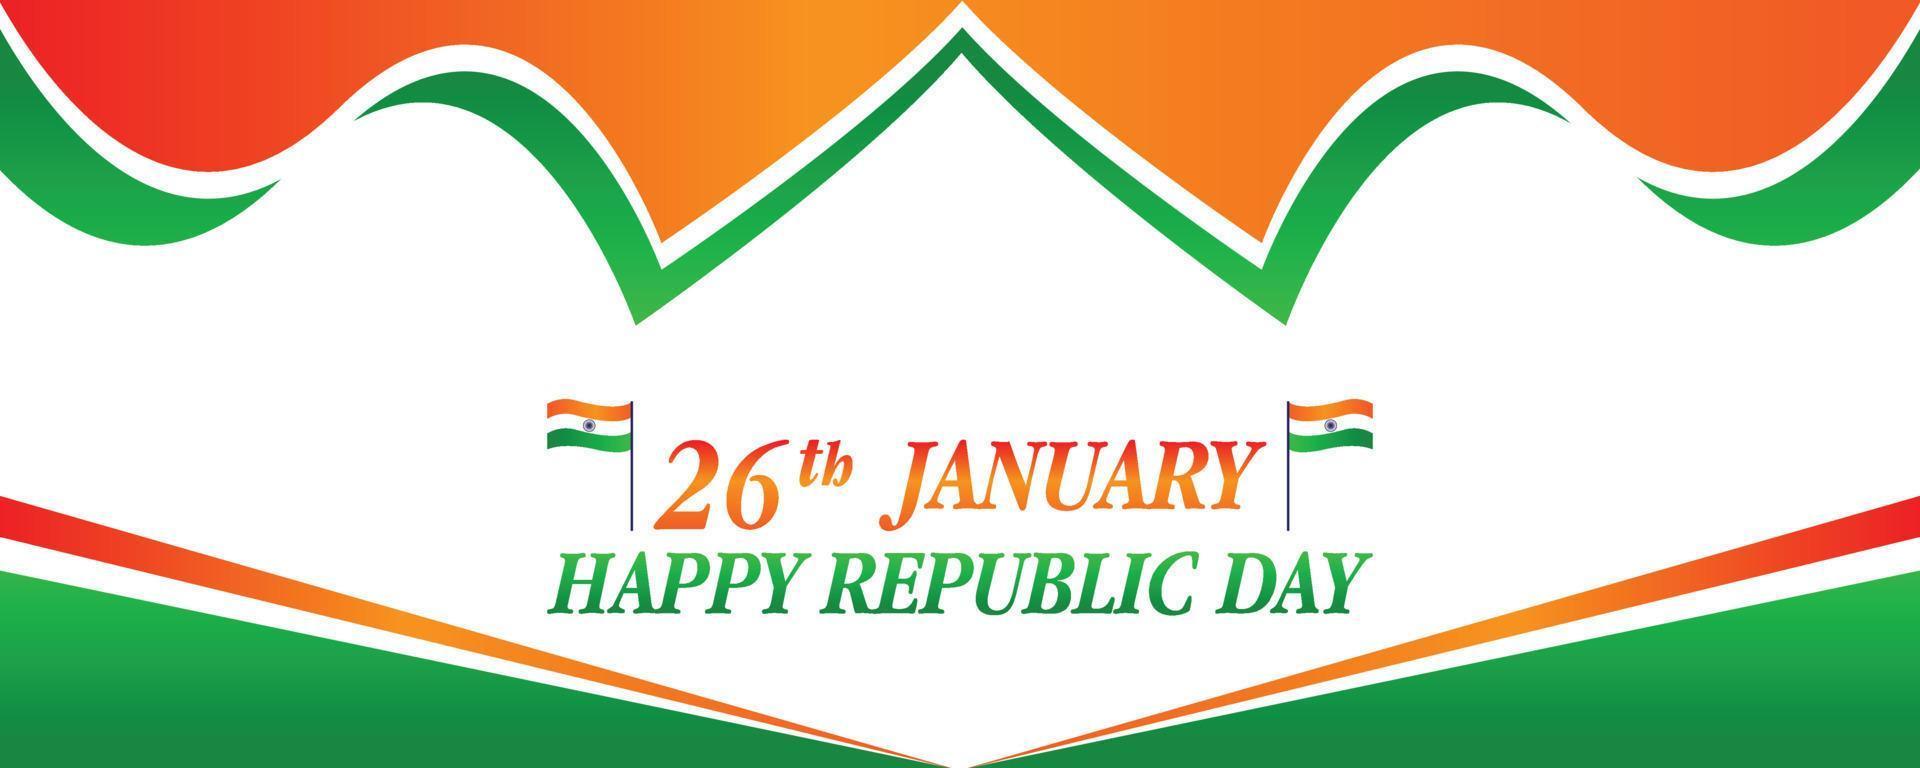 concepto de feliz día de la república de la bandera india, 26 de enero ilustración de vector de fondo del día de la república india feliz.